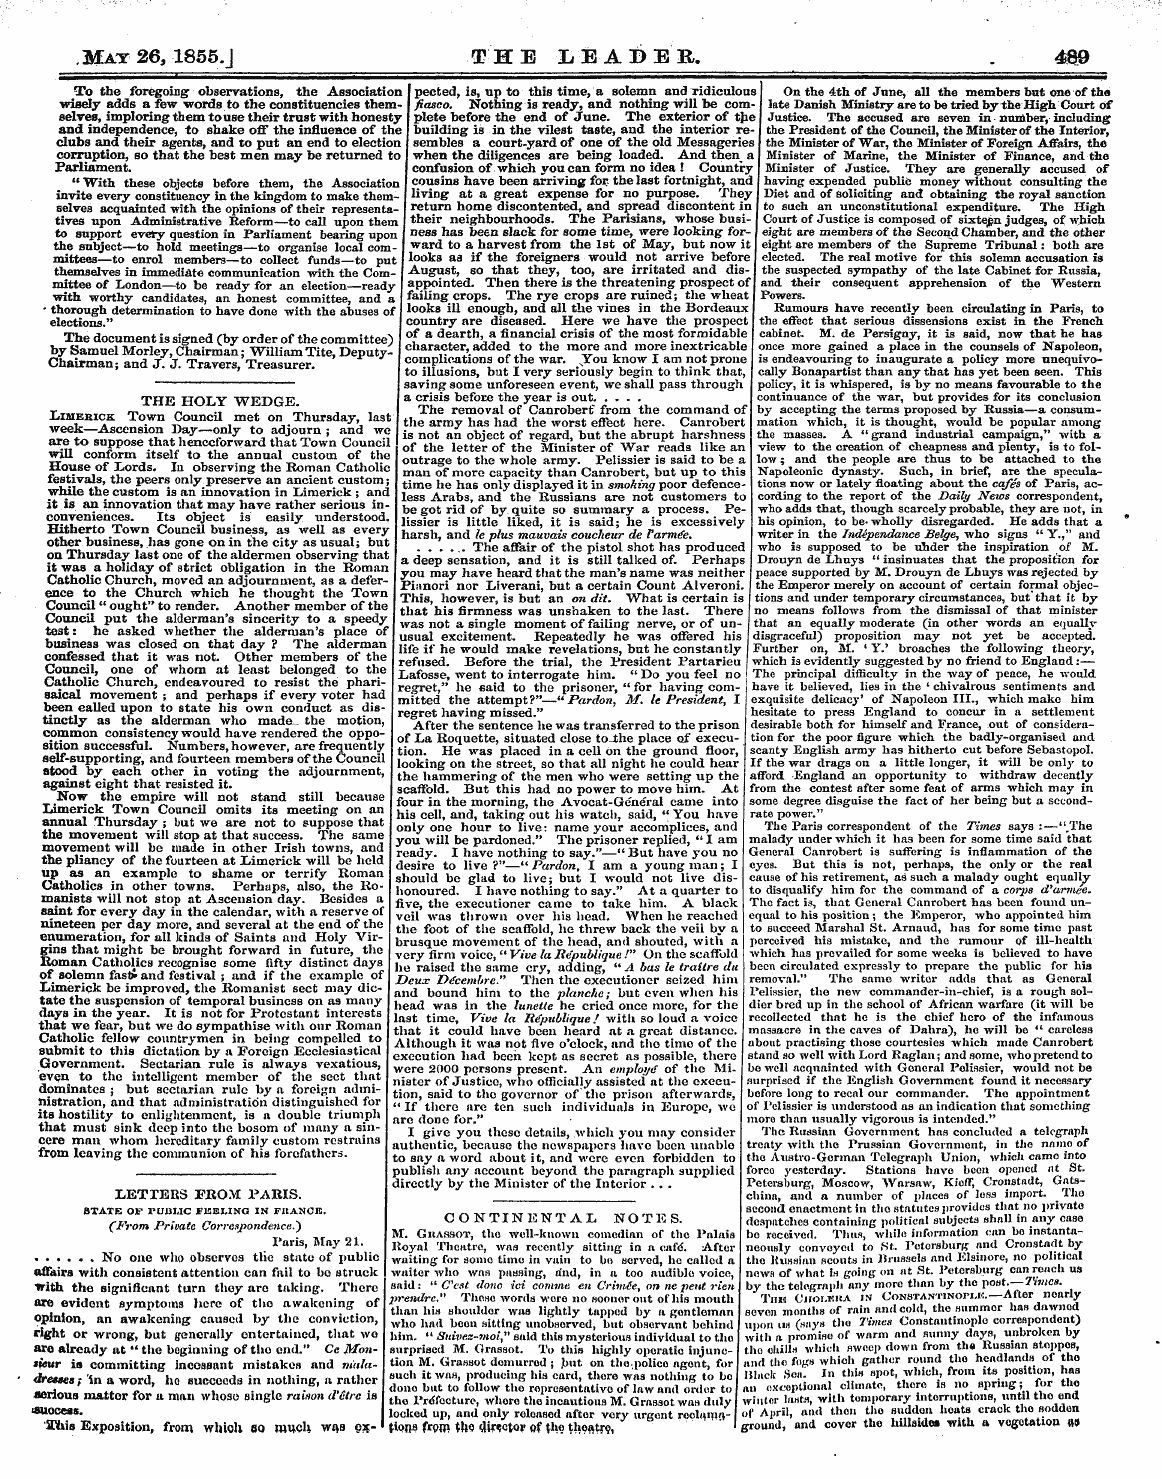 Leader (1850-1860): jS F Y, 2nd edition - Mat 26, 1855.J The Leader. 4m